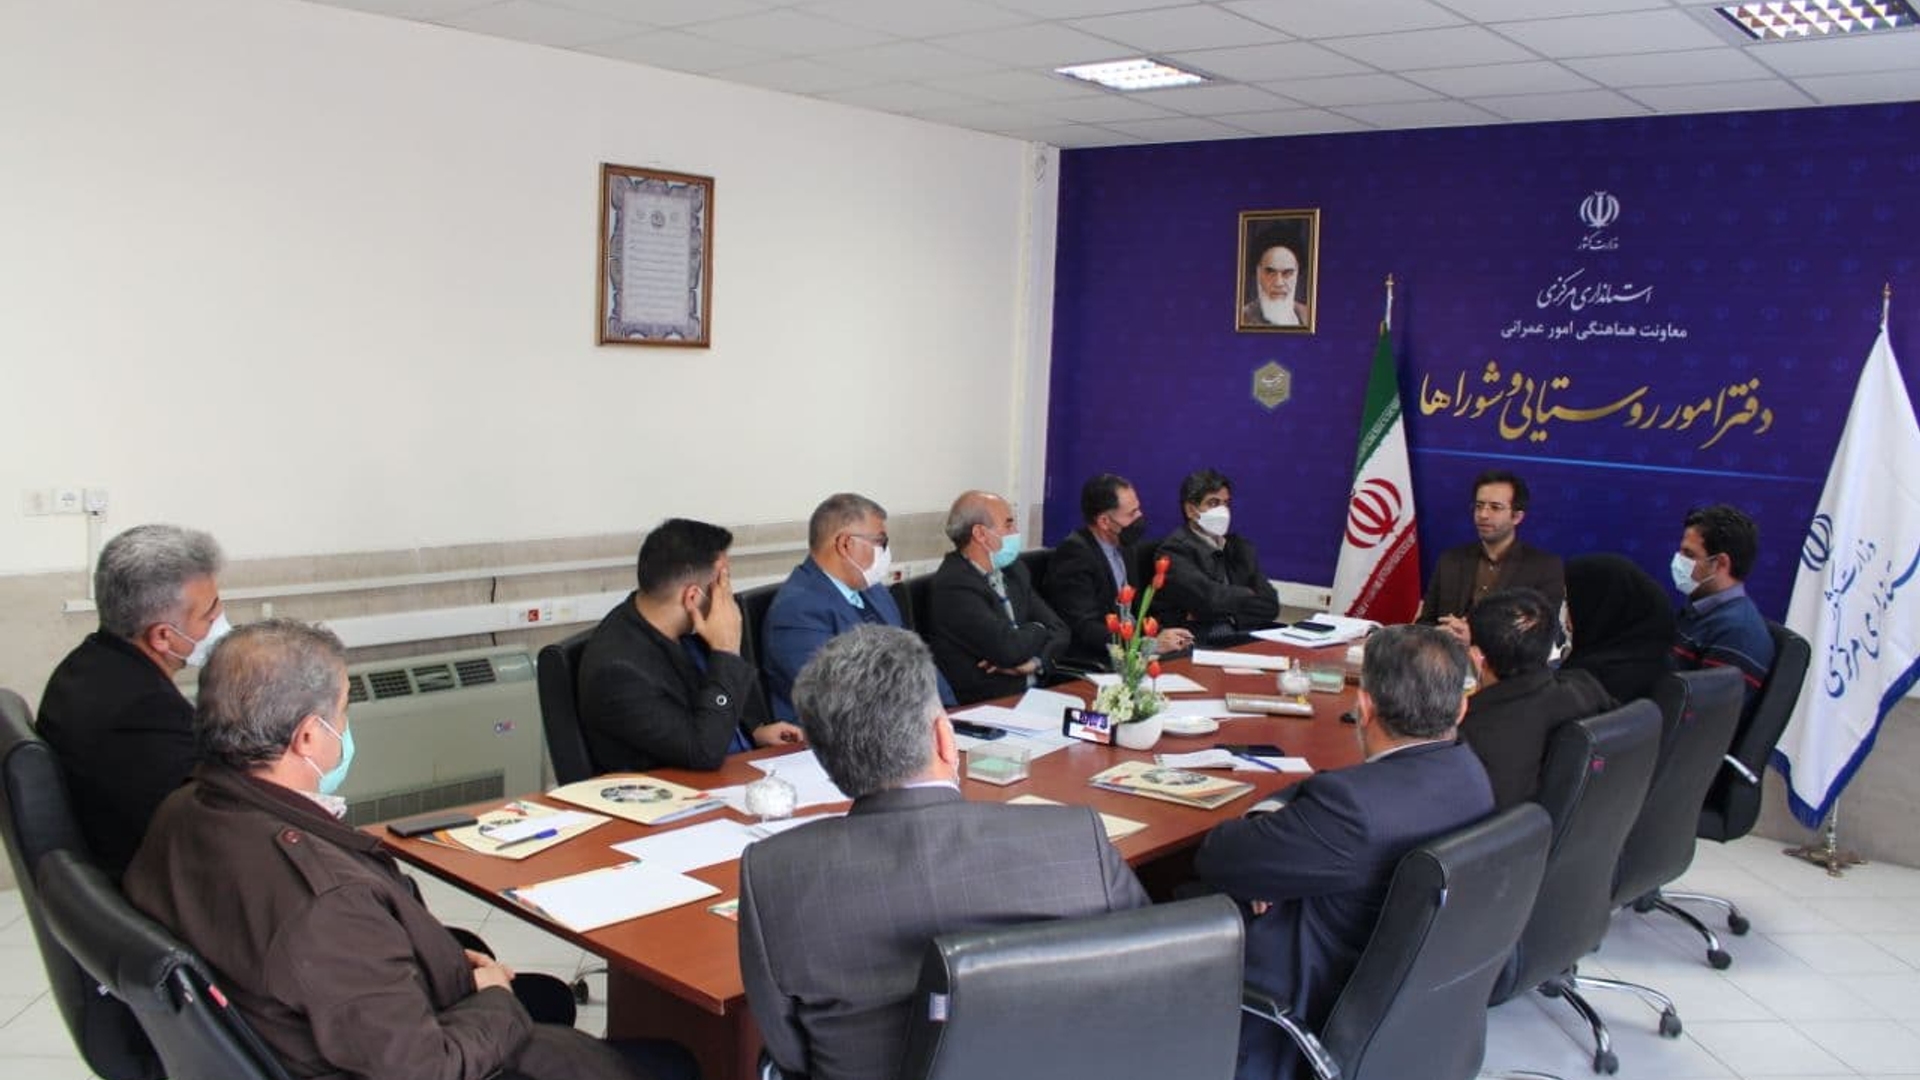 برگزاری کارگاه آموزشی ویژه اعضای شوراهای اسلامی بخش های مرکزی و نوبران شهرستان ساوه